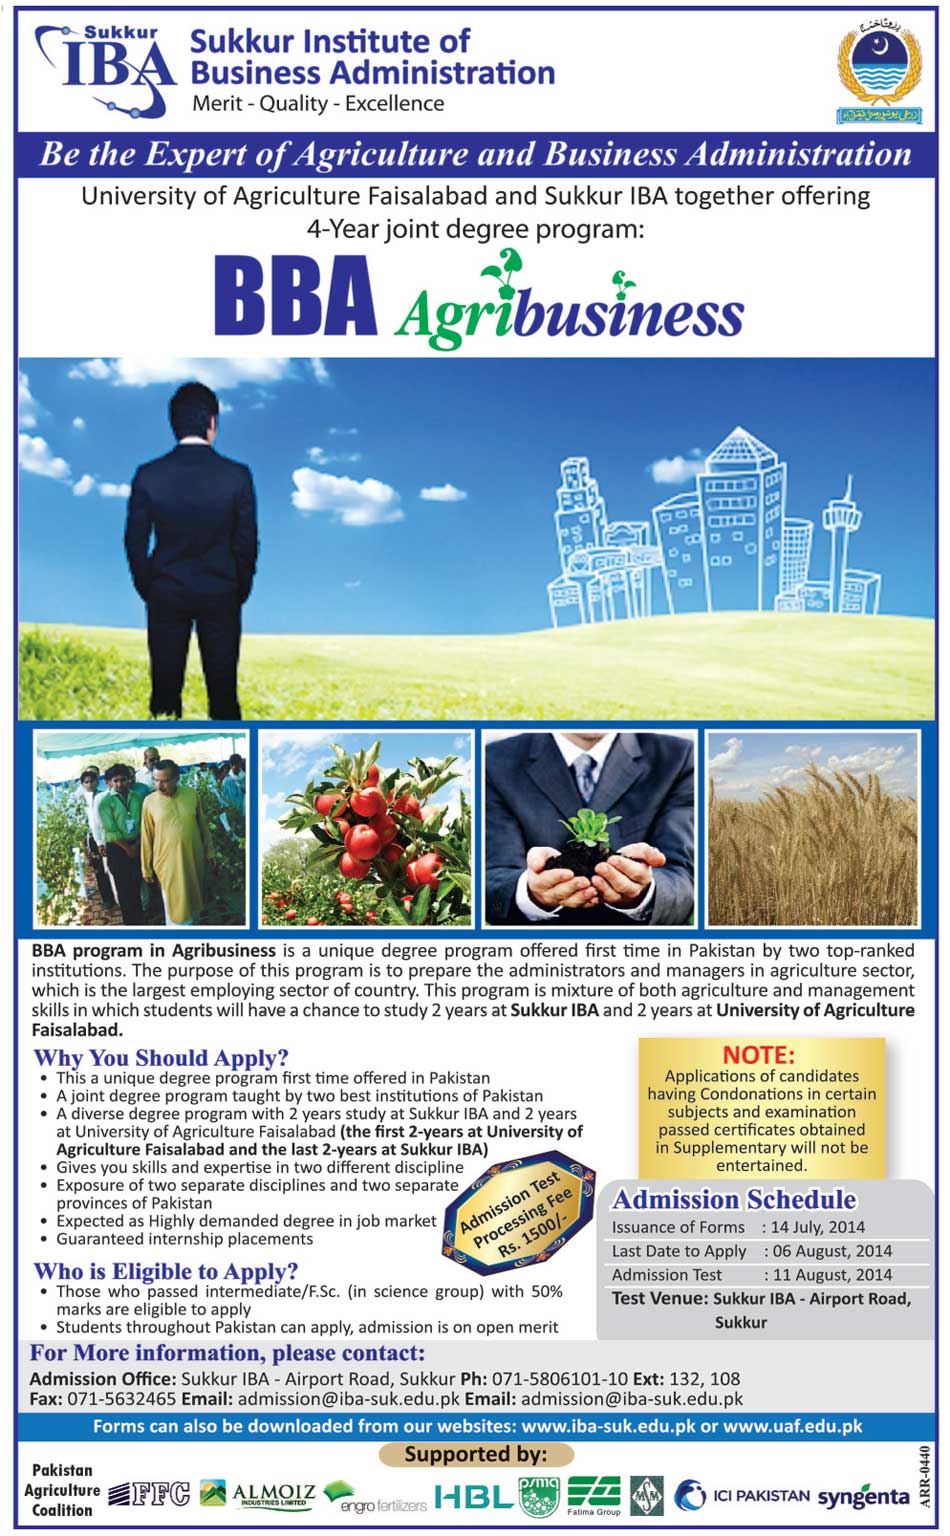 IBA Sukkur BBA Agribusiness Admission 2014 Form, Last Date